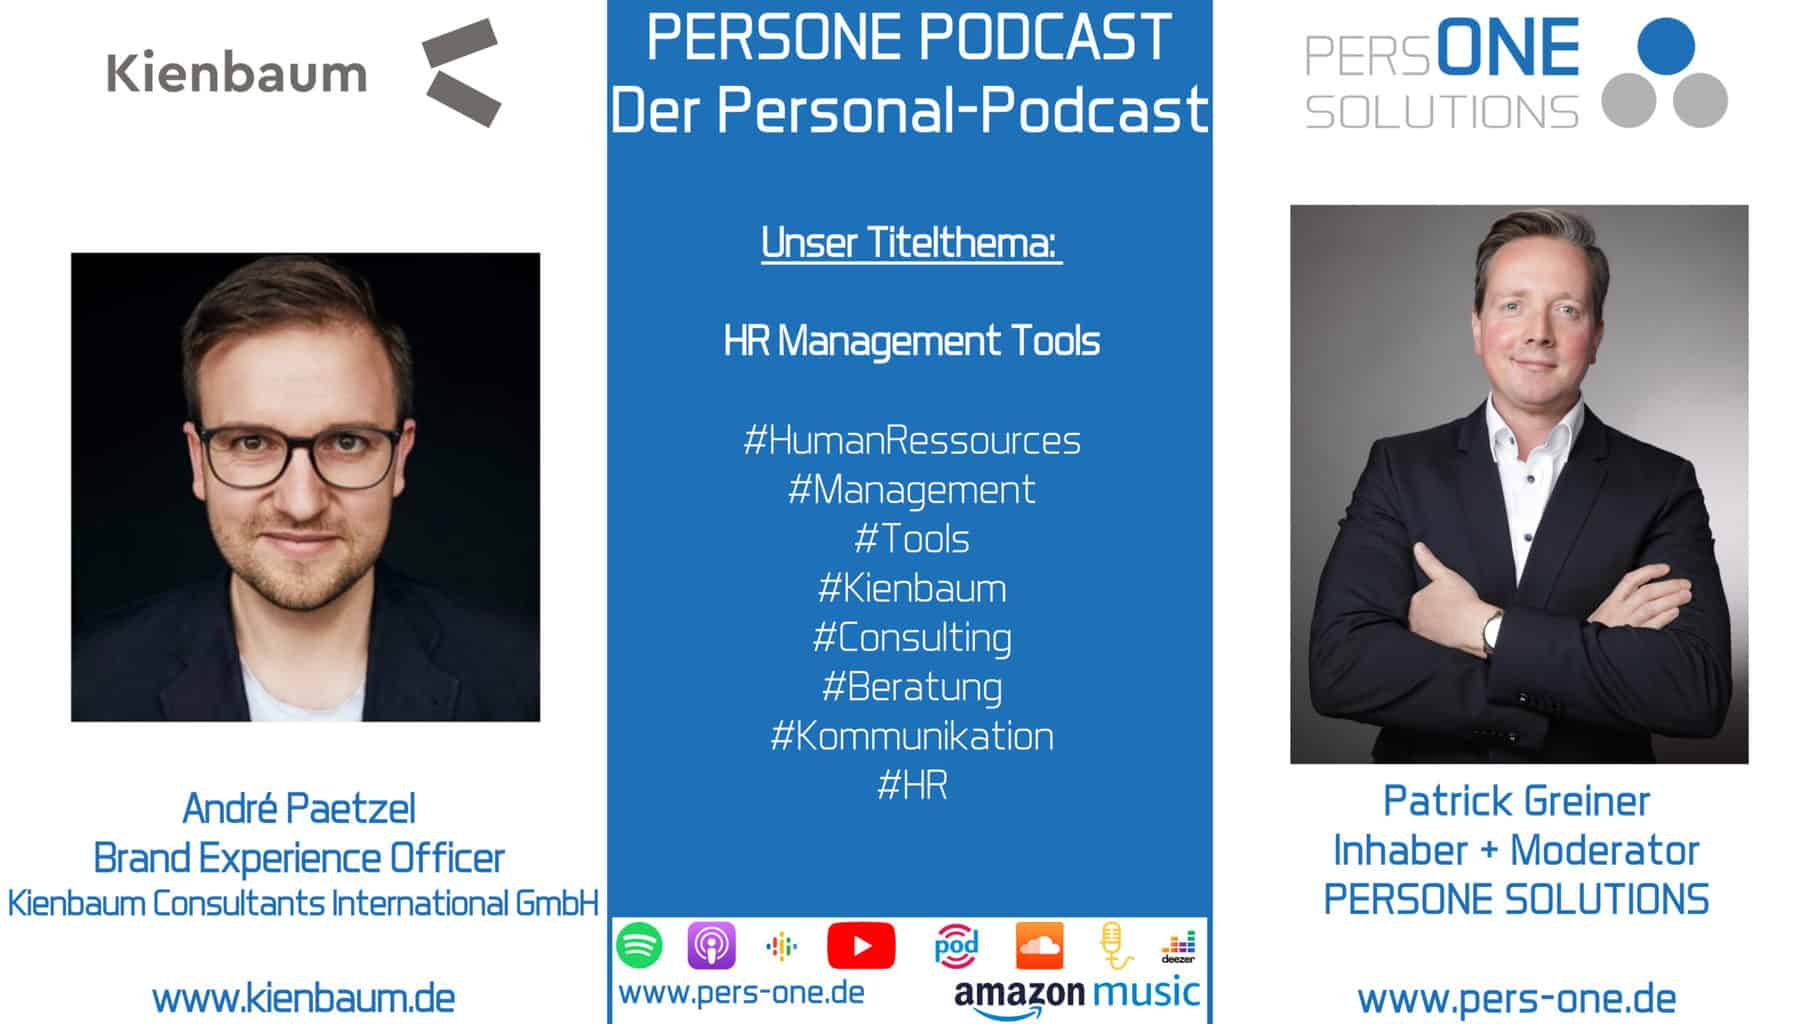 HR Management Tools| André Paetzel von Kienbaum im PERSONE PODCAST – Der Personal-Podcast